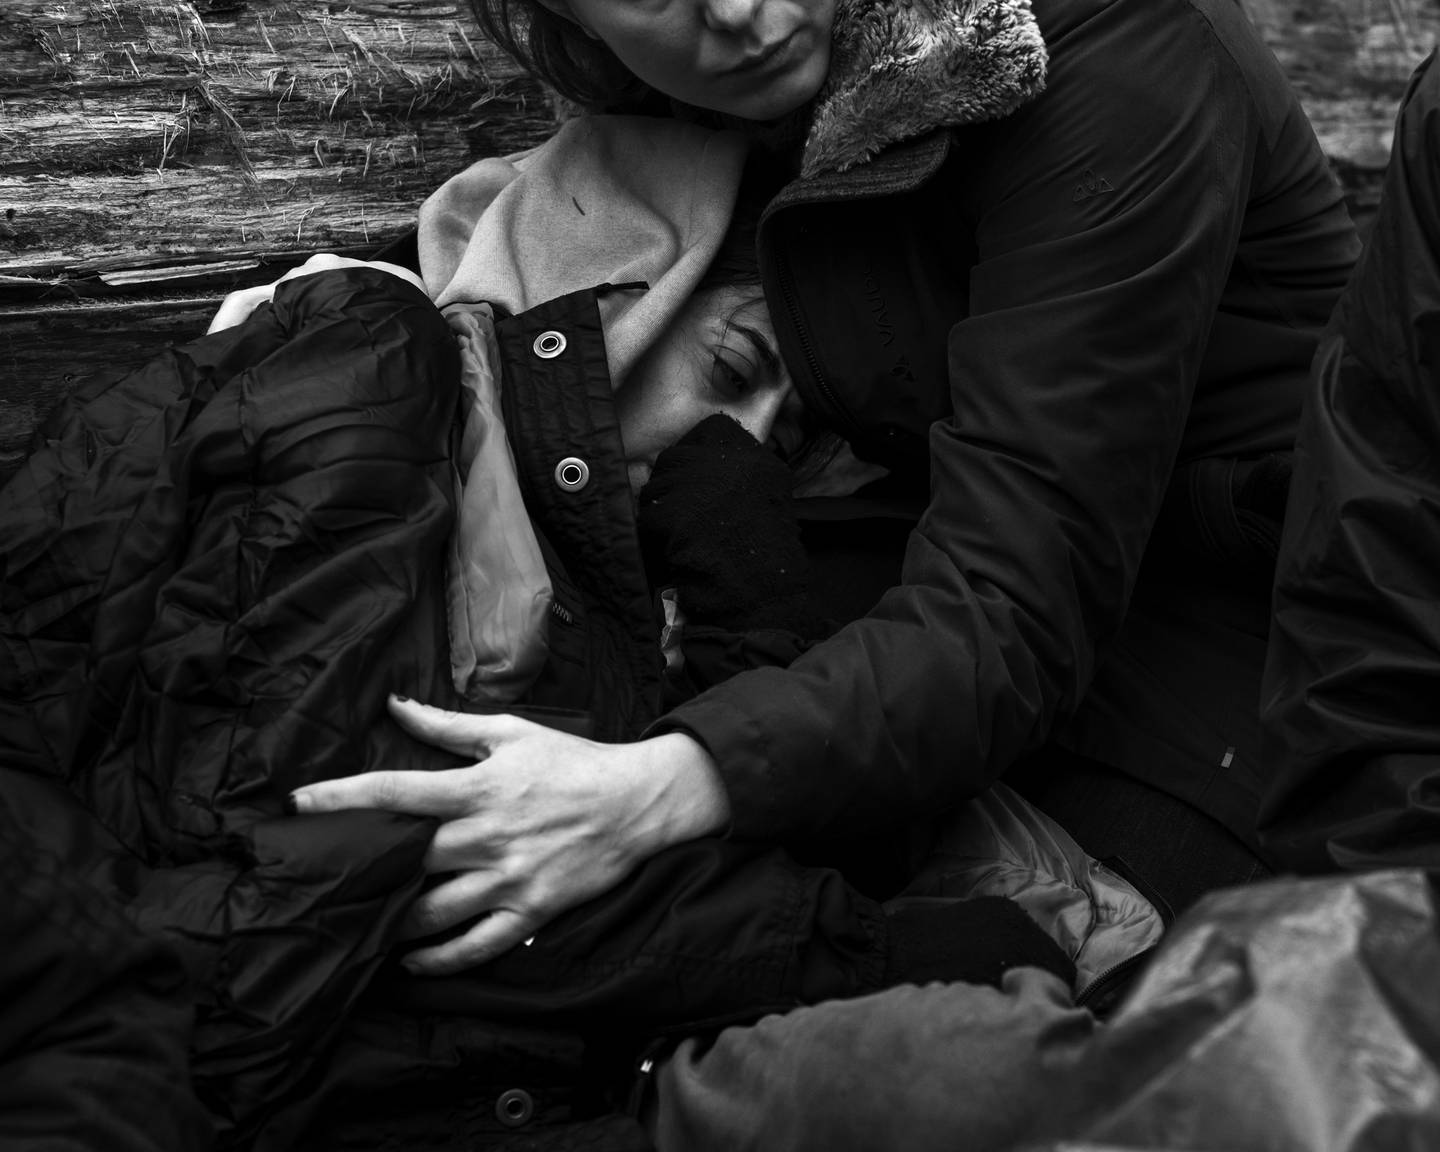 Fra samme aksjon som bildene av den kurdiske familien. Ula holder rundt en kvinne som forteller at mannen hennes ble slått og bitt av hunder på den hviterussiske siden.